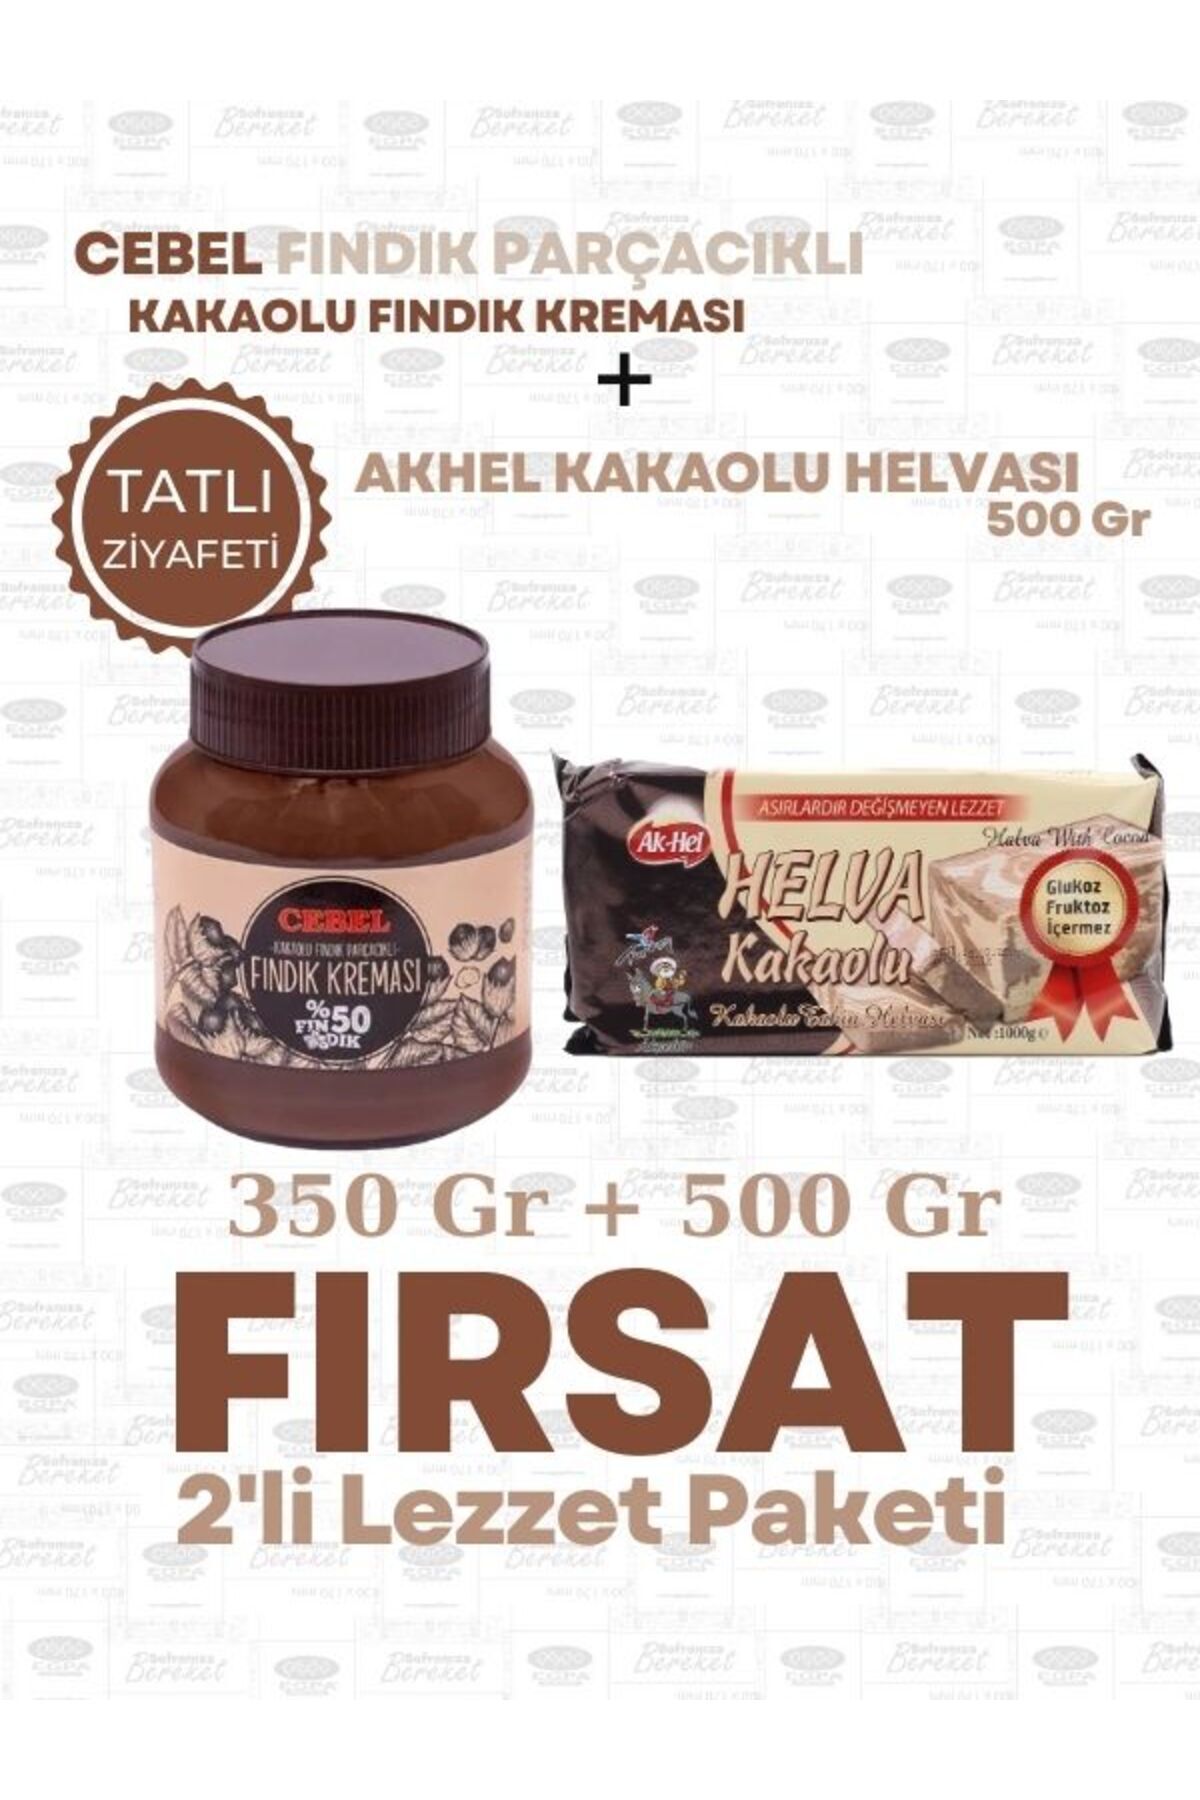 Cebel Lezzet Paketi Cebel 350 Gr Kakaolu fındık kreması + Akhel 500 Gr Kakaolu Helva